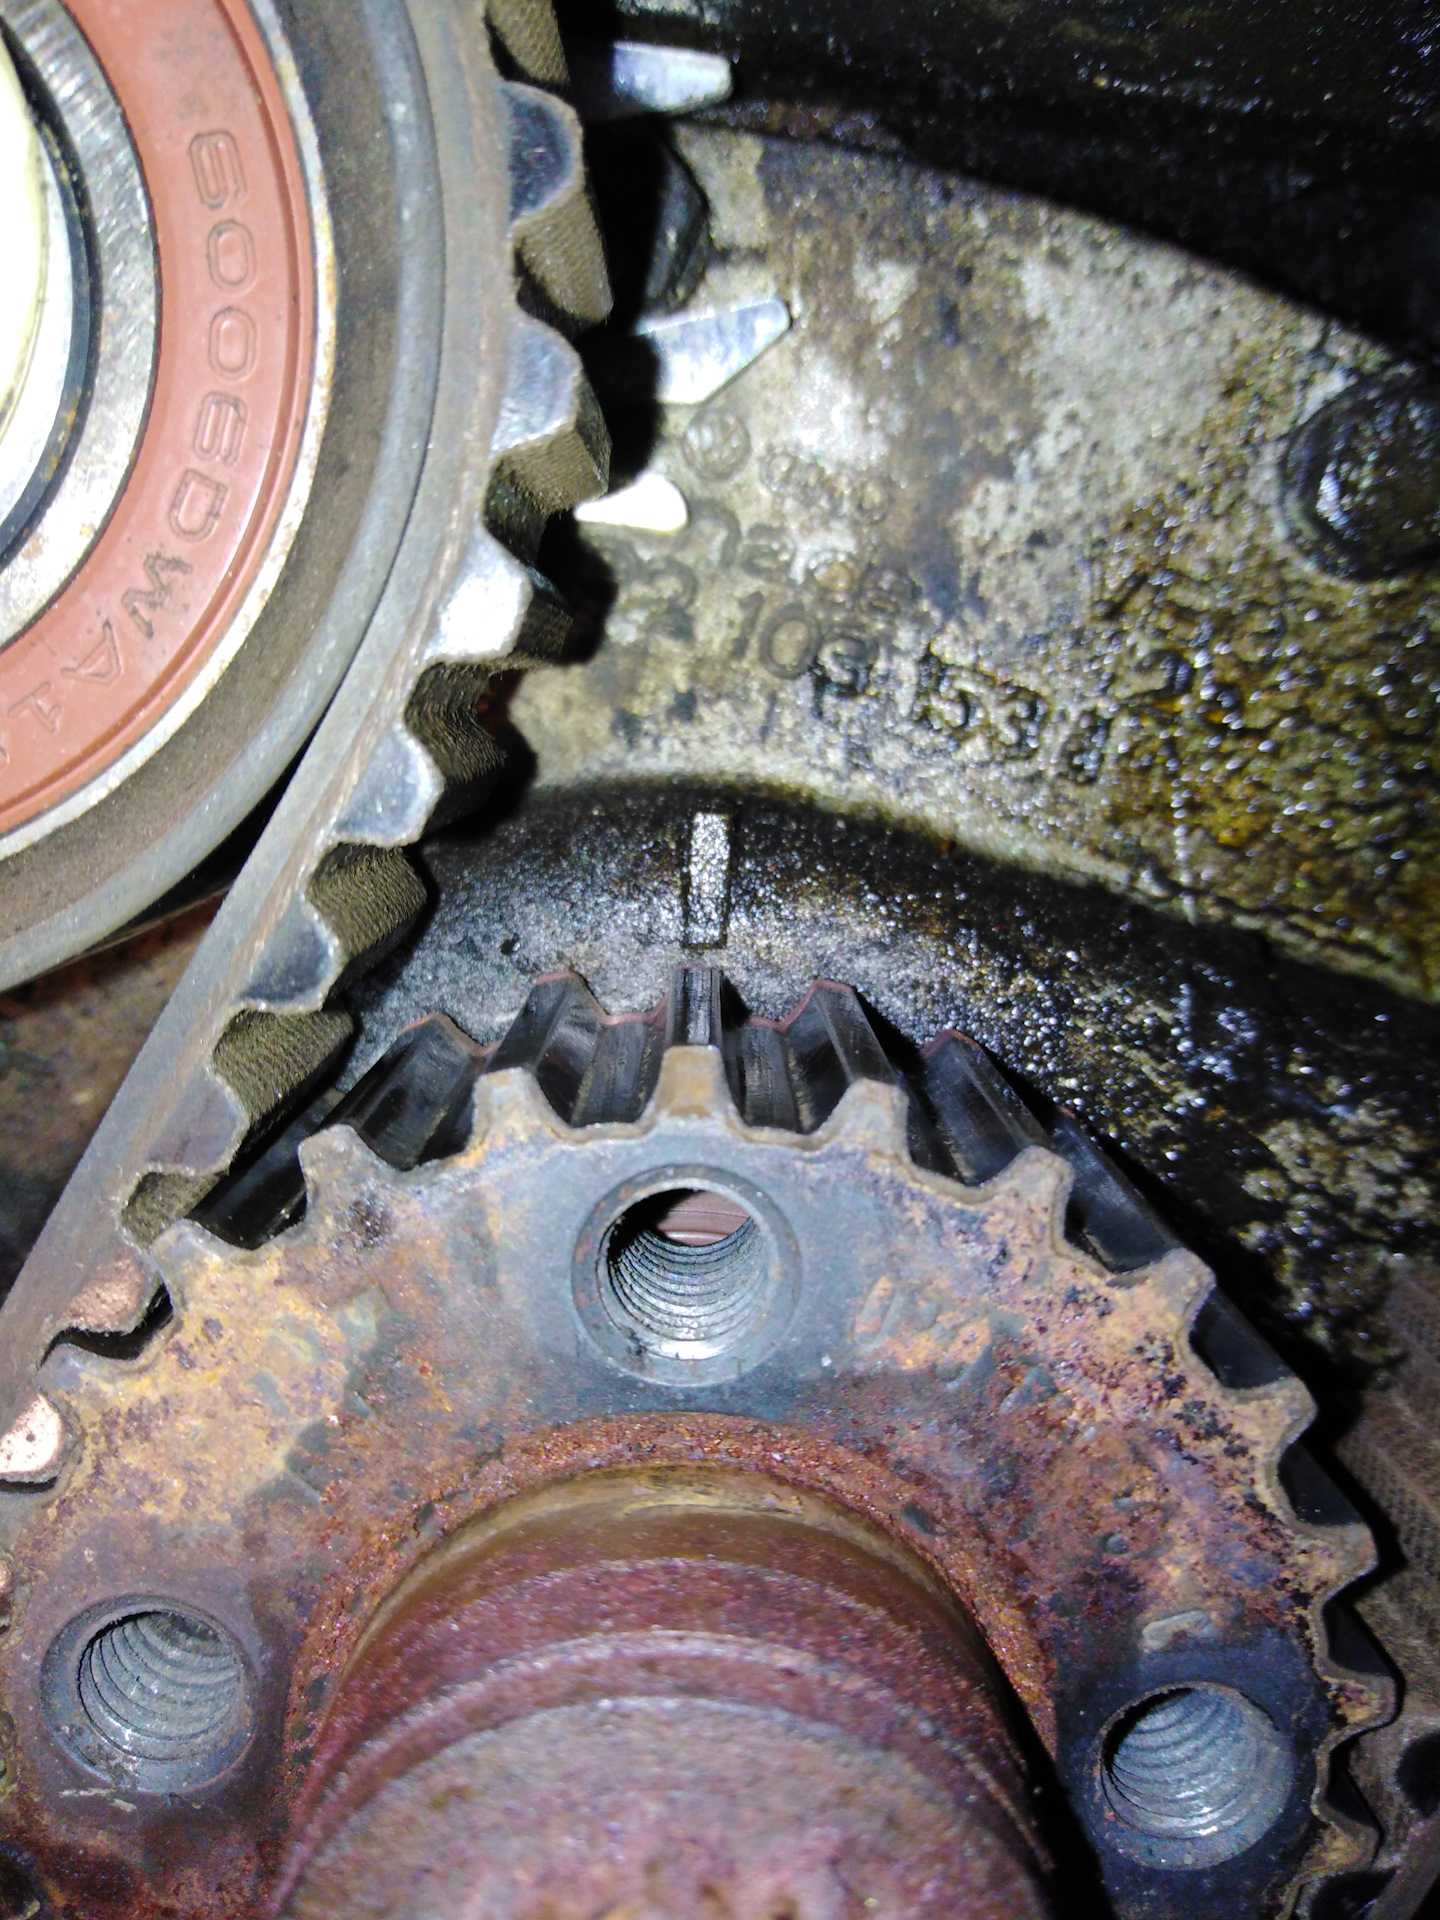 Шкода фелиция 1997 двигатель схема